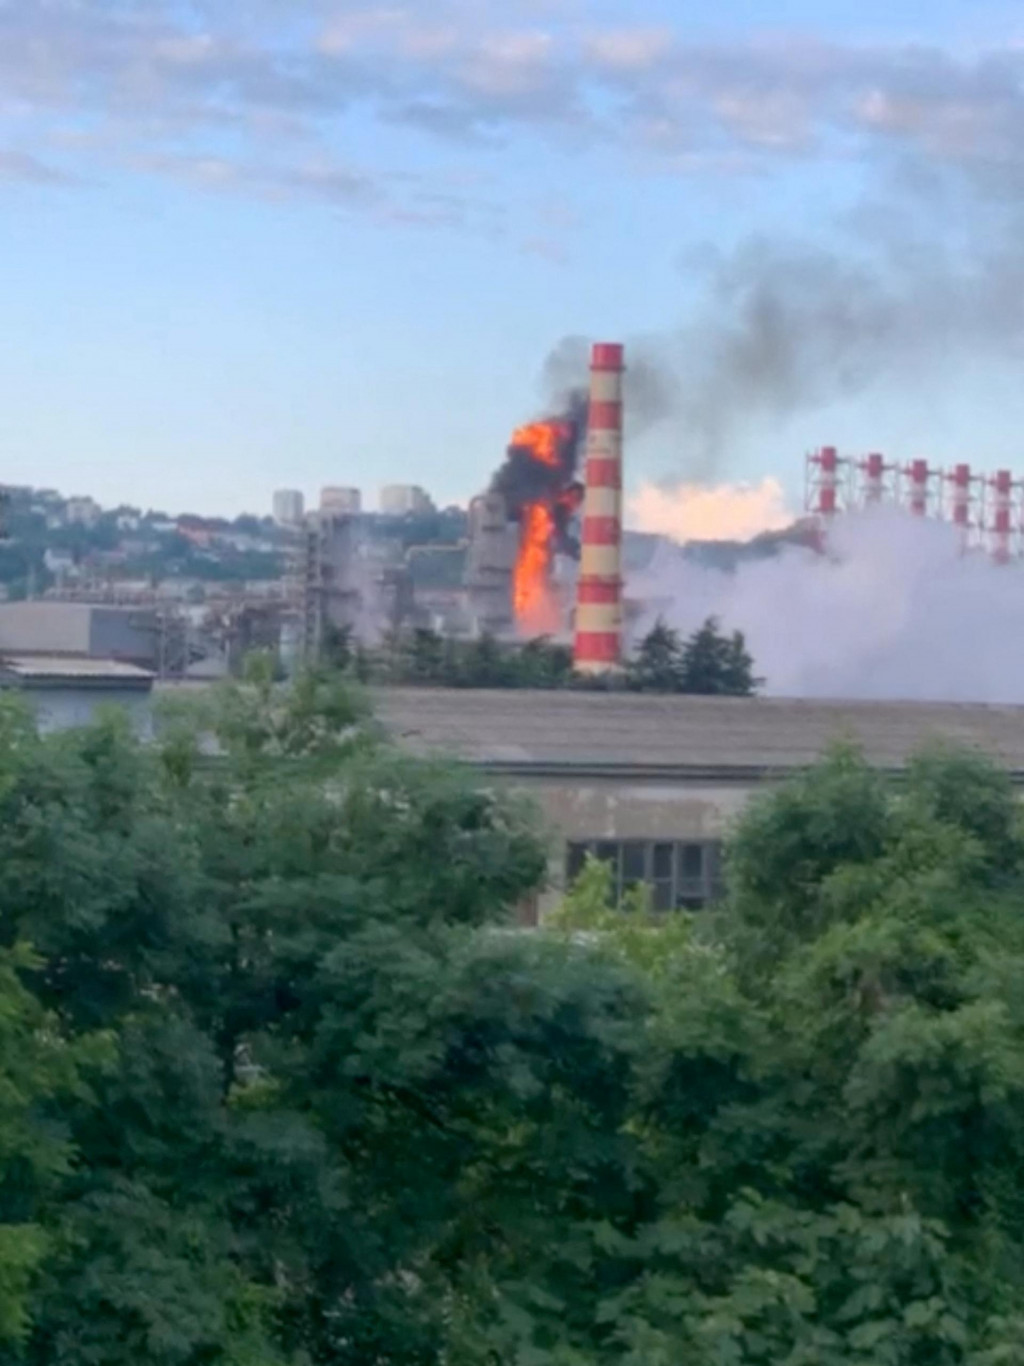 Dym a oheň stúpajú z rafinérie po útoku dronu v Tuapse v Krasnodarskom kraji. FOTO: Reuters